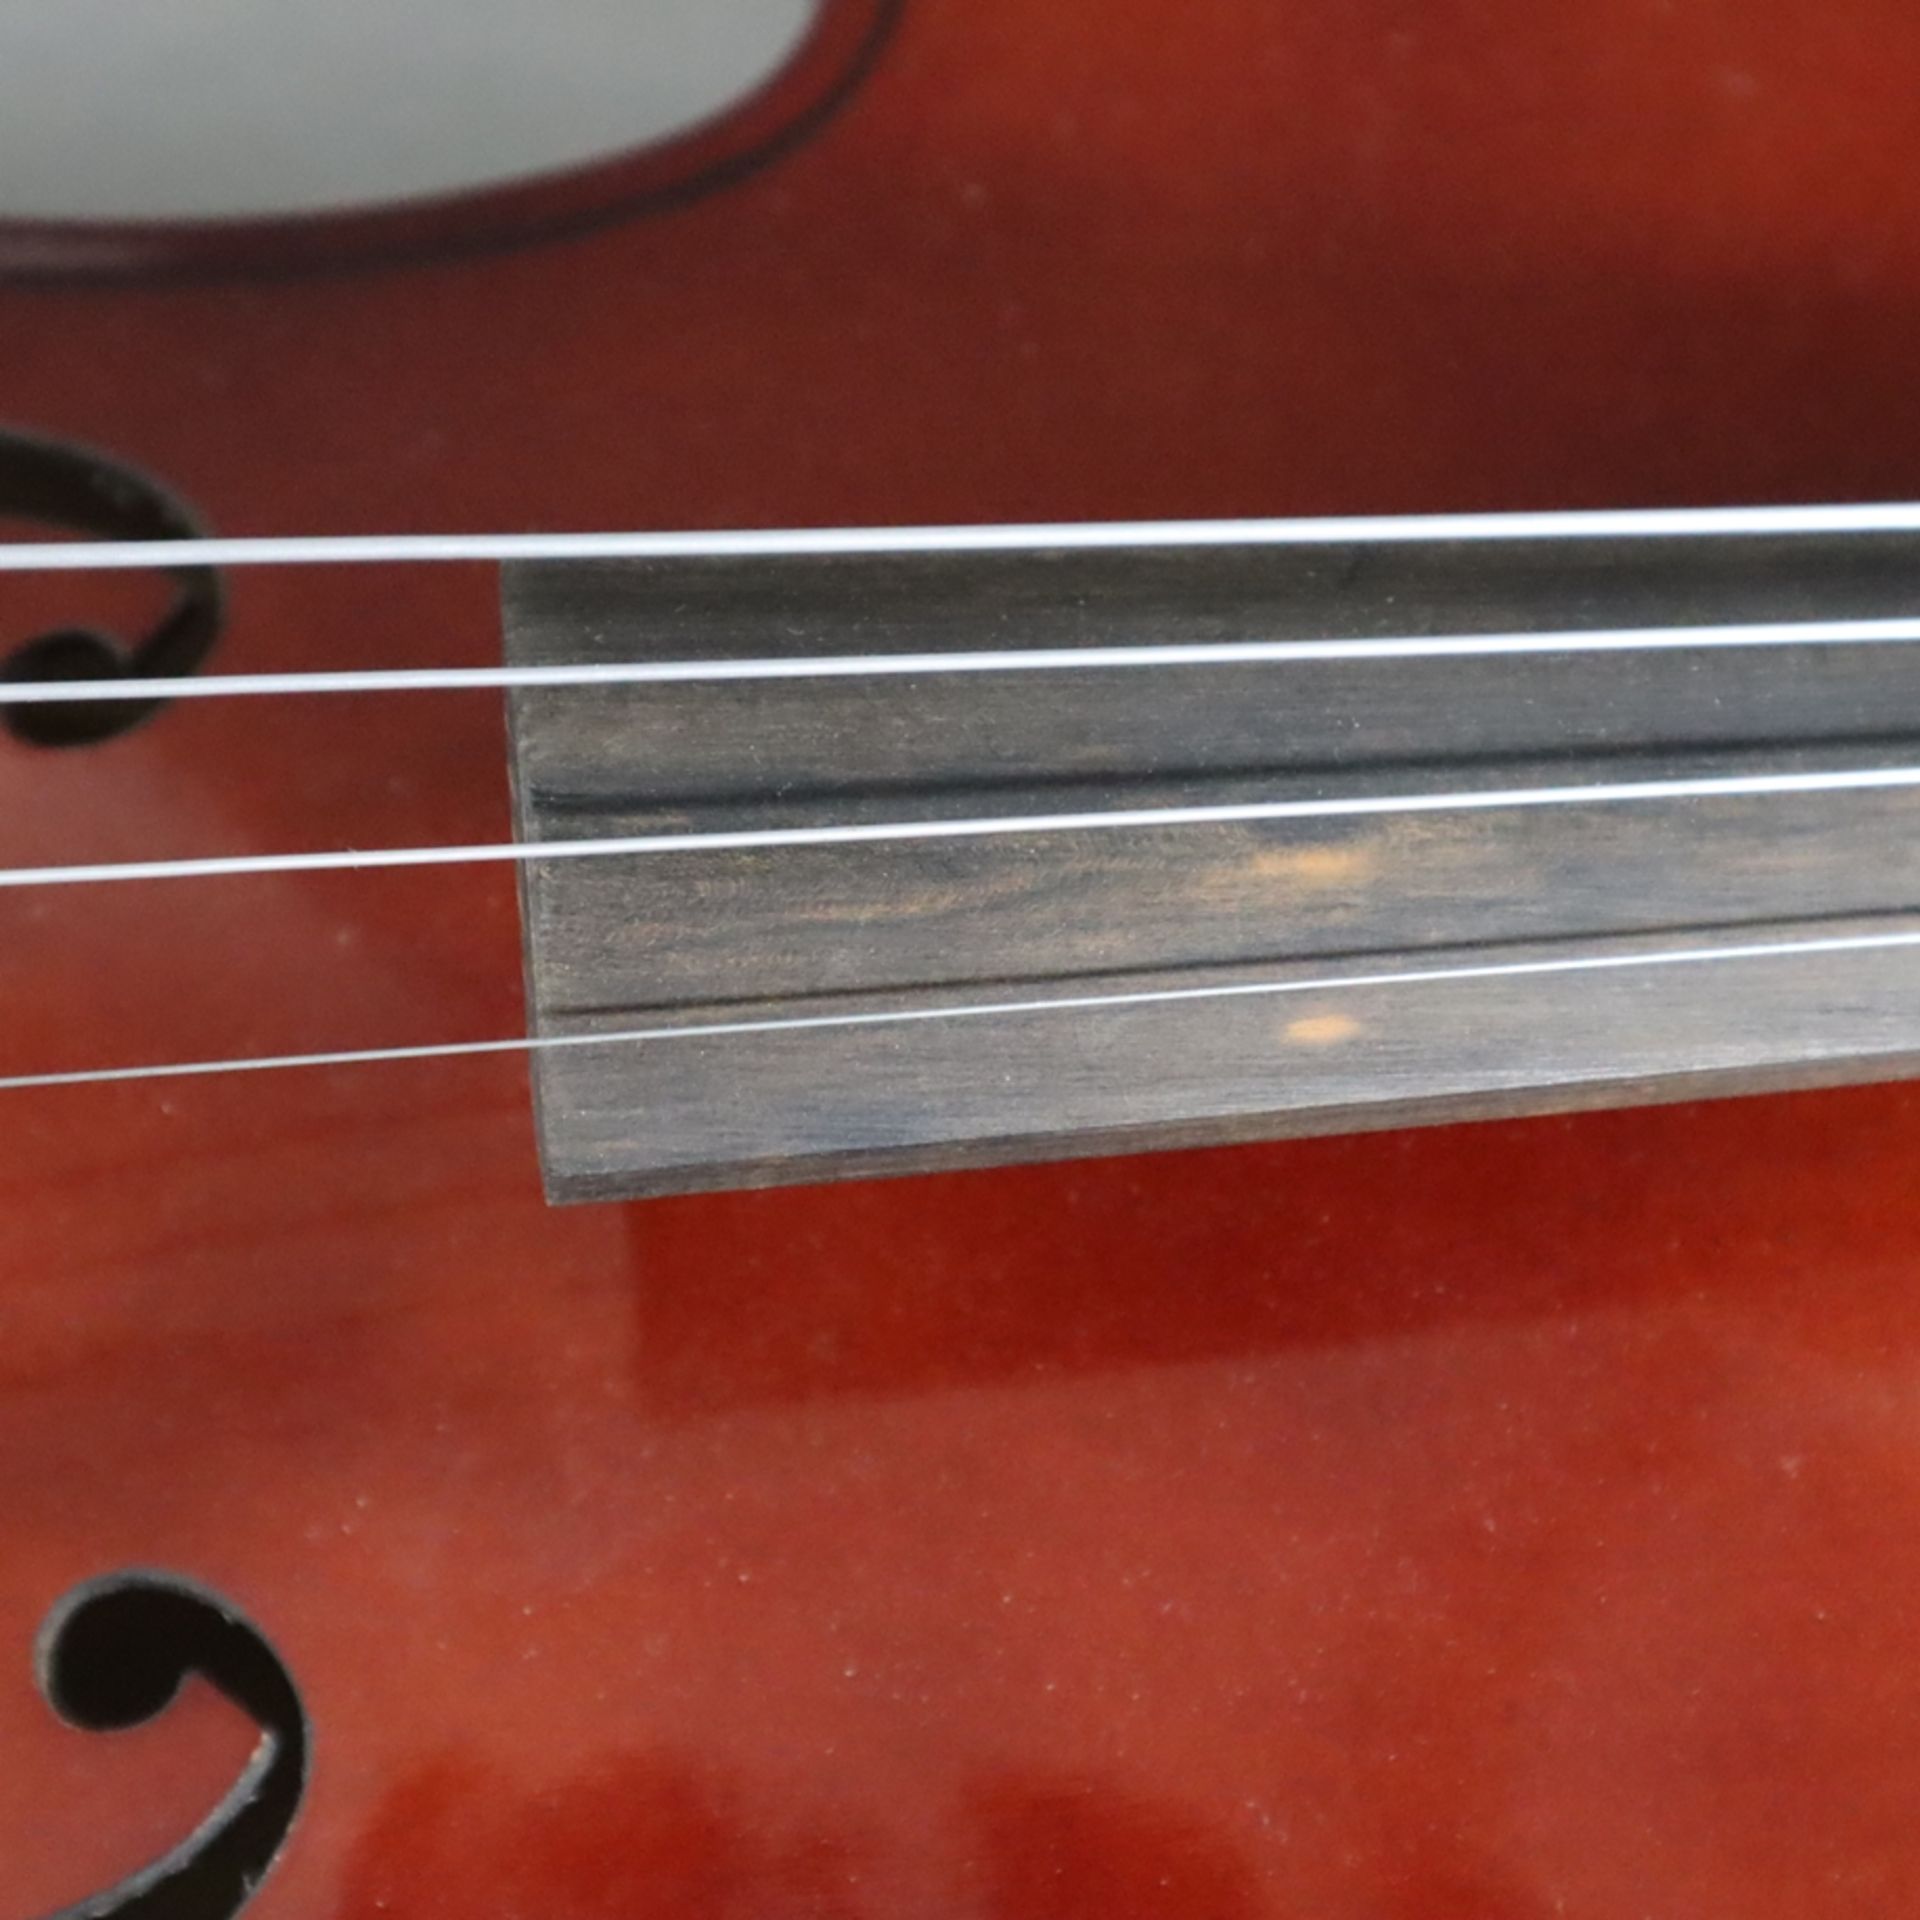 Cello - Kindergröße, innen mit Aufkleber "Made in Czechoslovakia", Holzkorpus mit zwei f-Löchern, S - Bild 5 aus 12